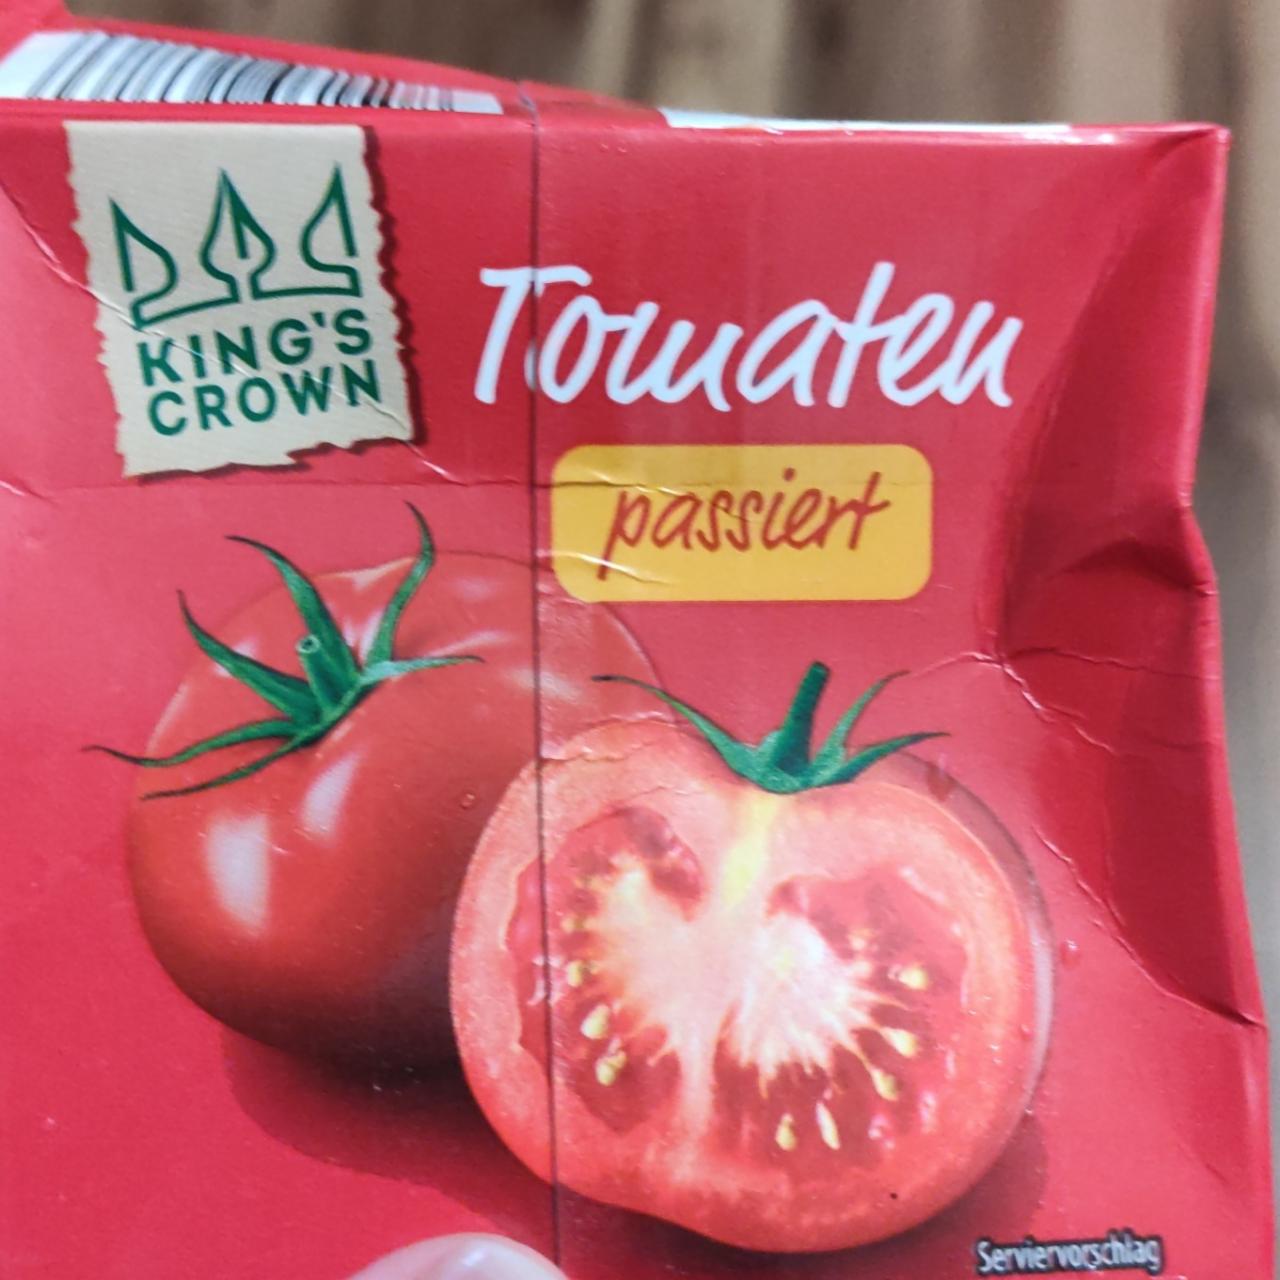 Fotografie - Tomaten passiert King's Crown